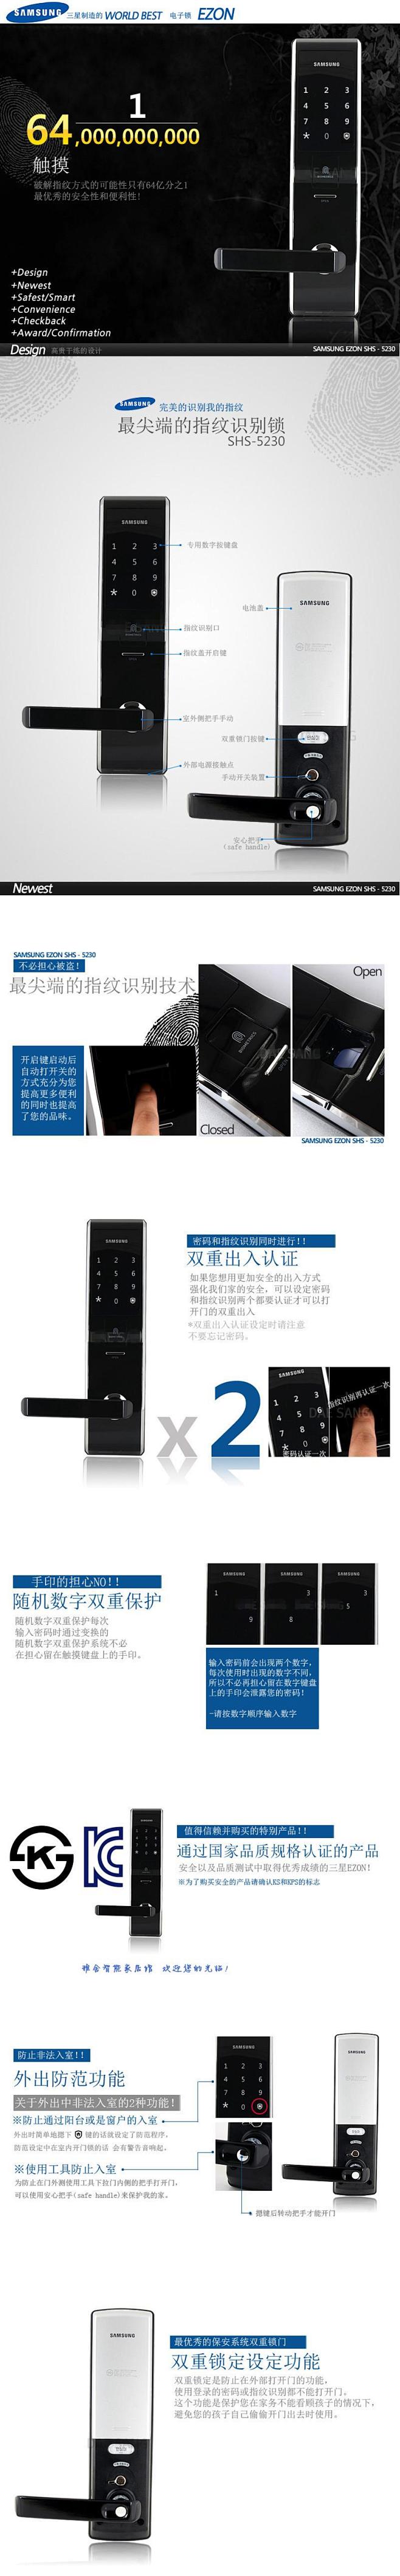 锁--三星指纹锁SHS- 5230-韩国...